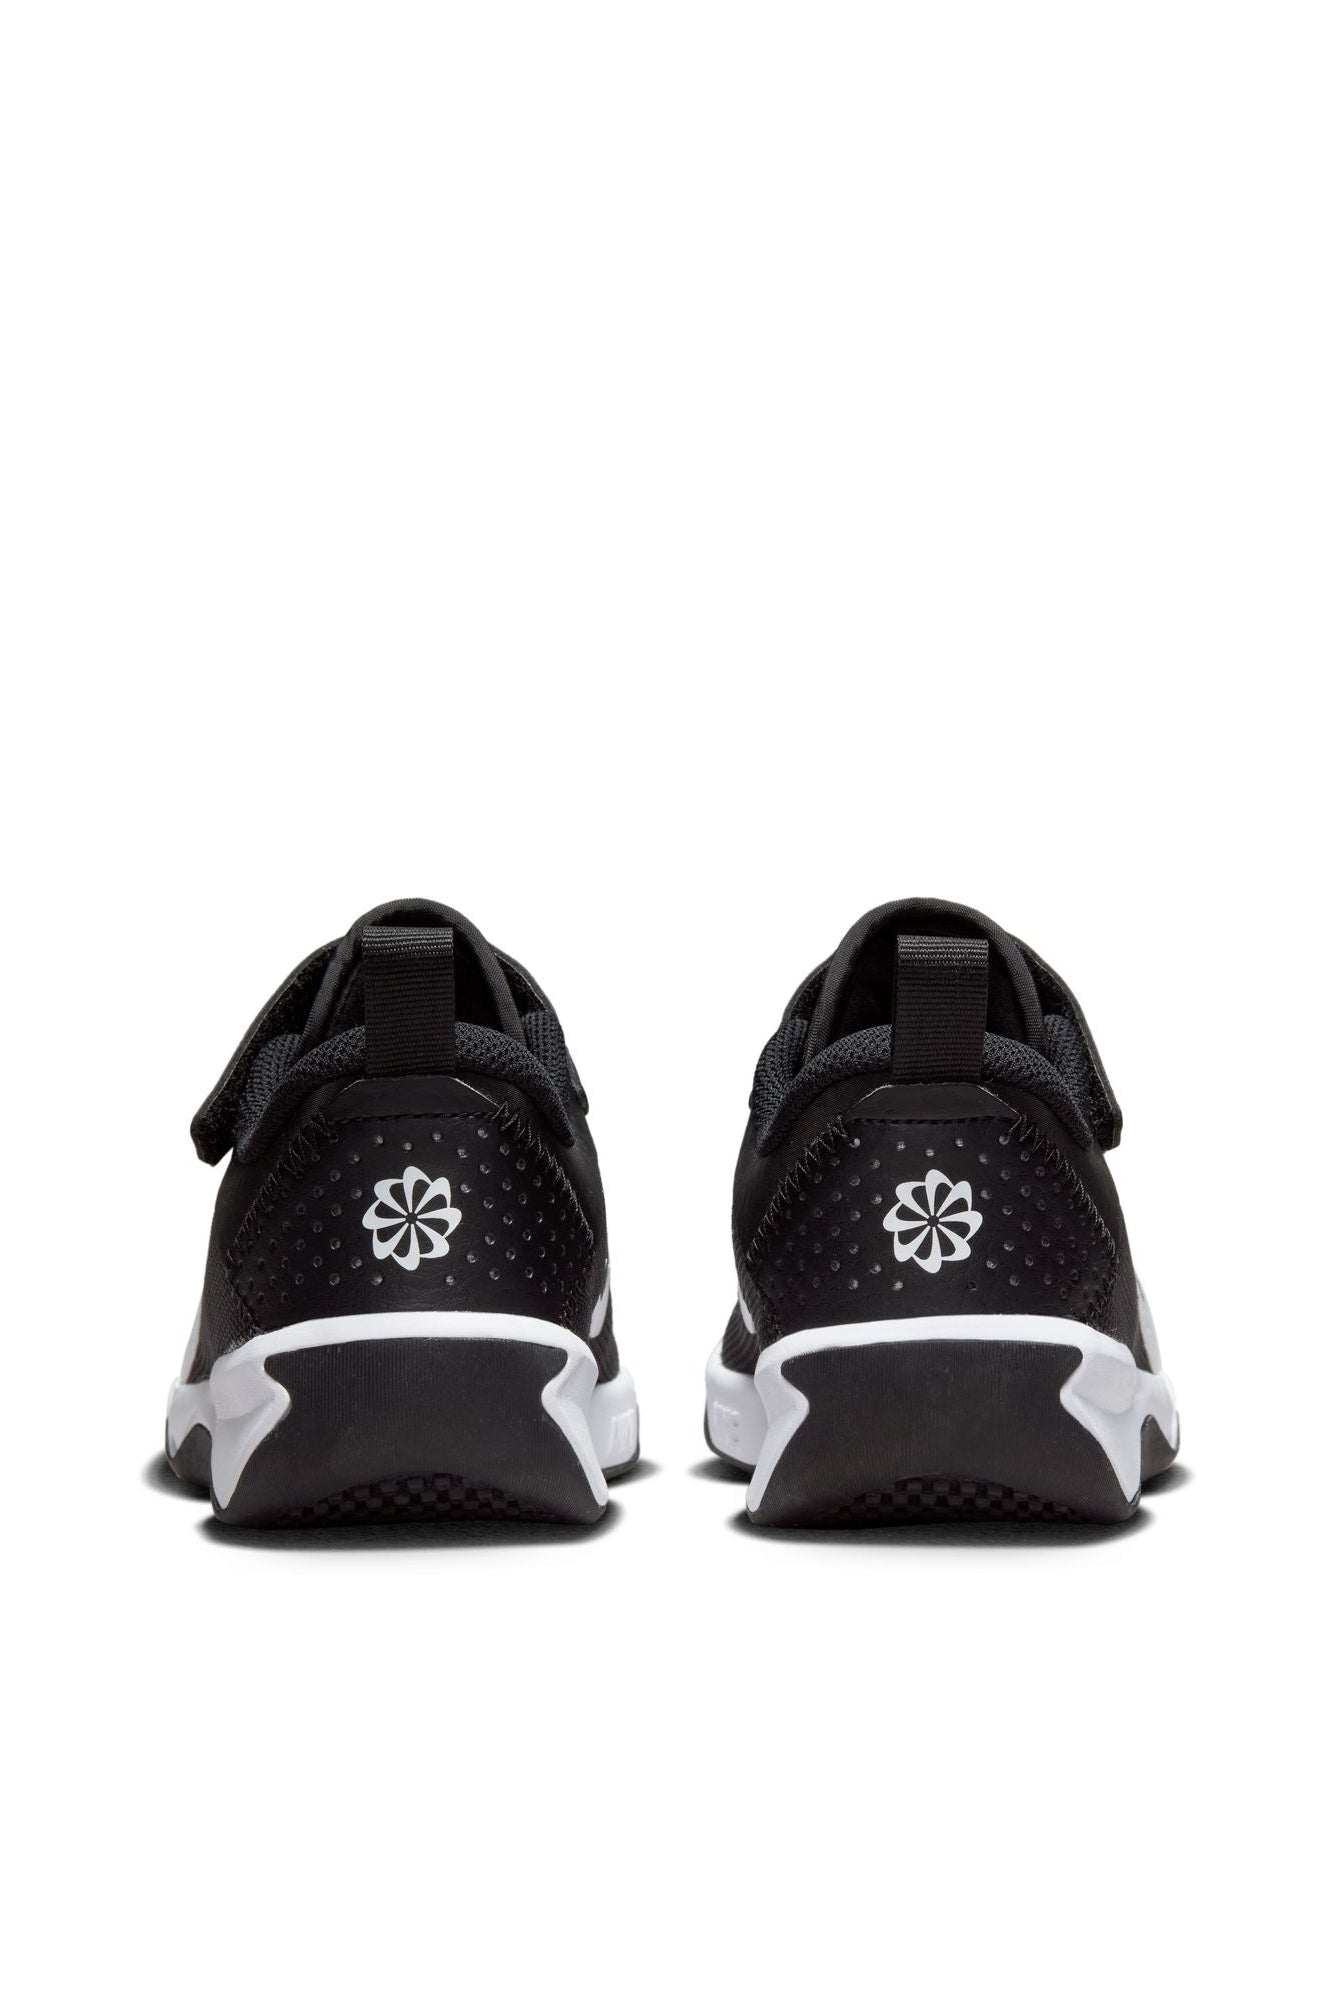 נעלי ספורט לילדים Omni Multi-Court בצבע שחור ולבן